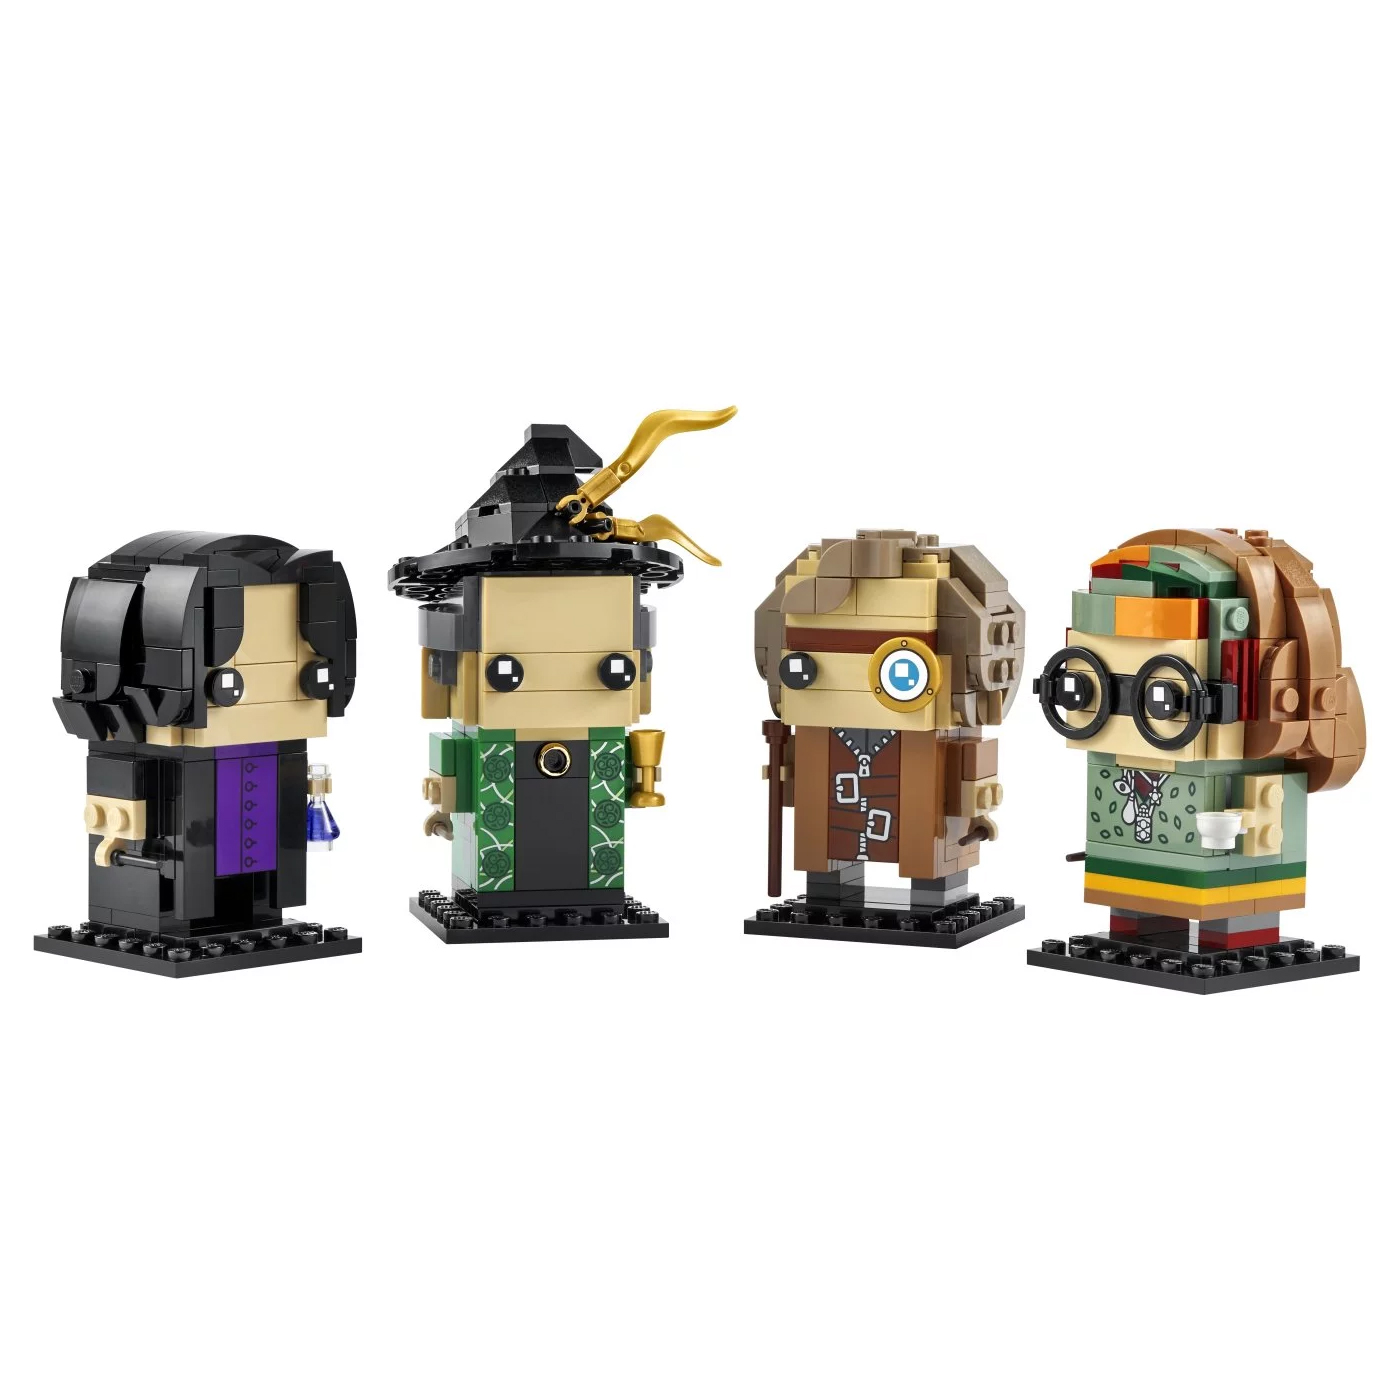 Конструктор Lego BrickHeadz Harry Potter Professors of Hogwarts 40560, 601 деталь конструктор lego brickheadz scrooge mcduck huey dewey